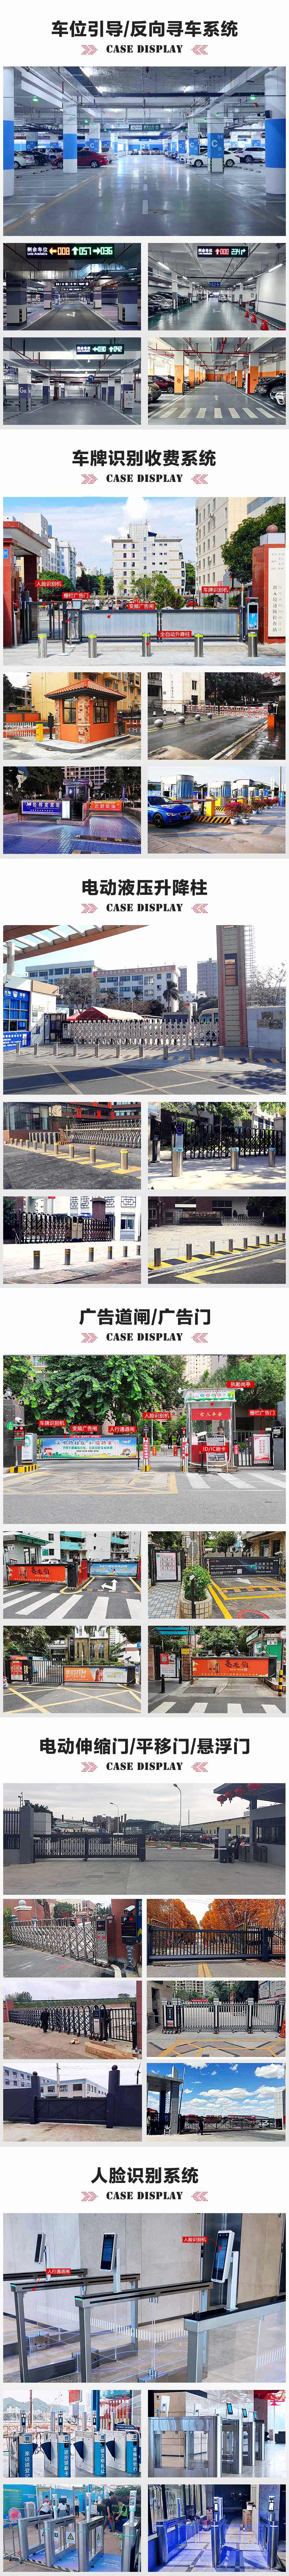 杭州某医院反向寻车视频车位引导系统